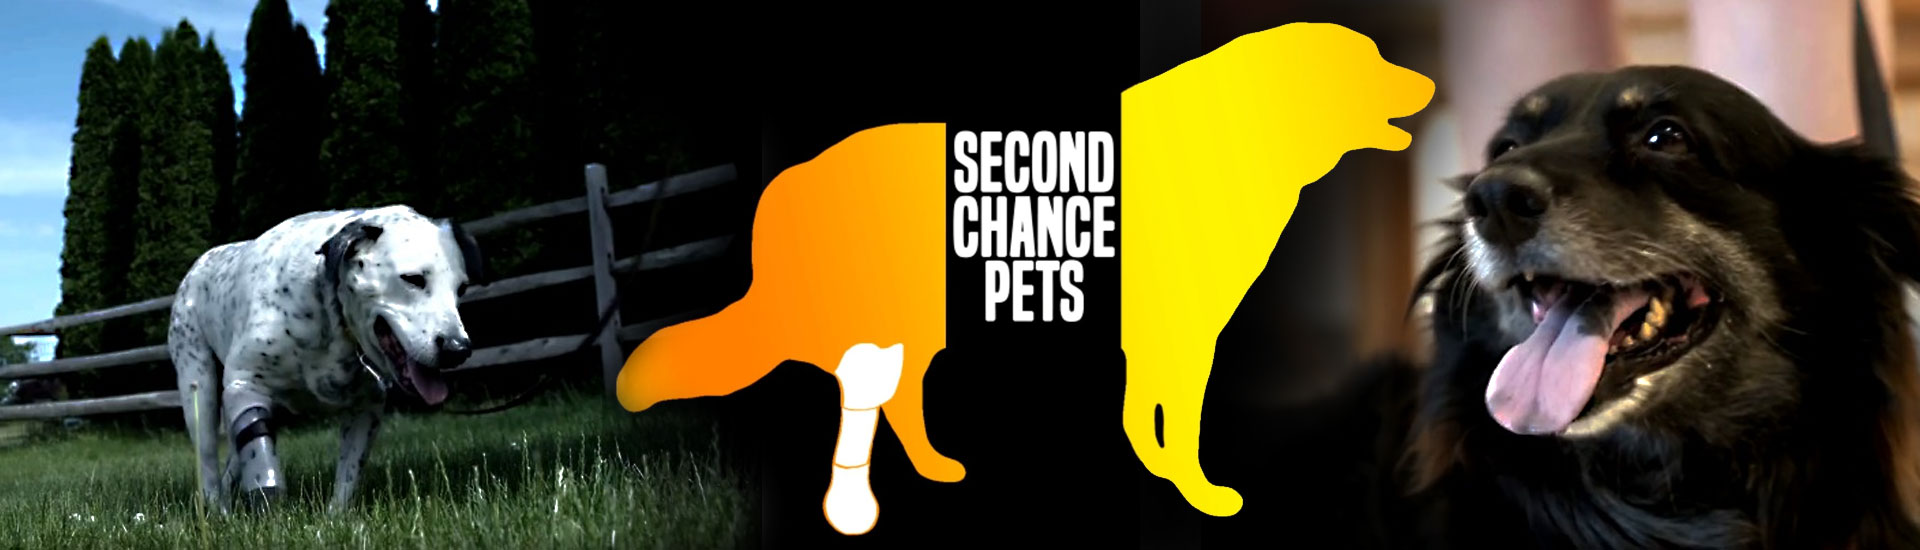 Xploration Second Chance Pets